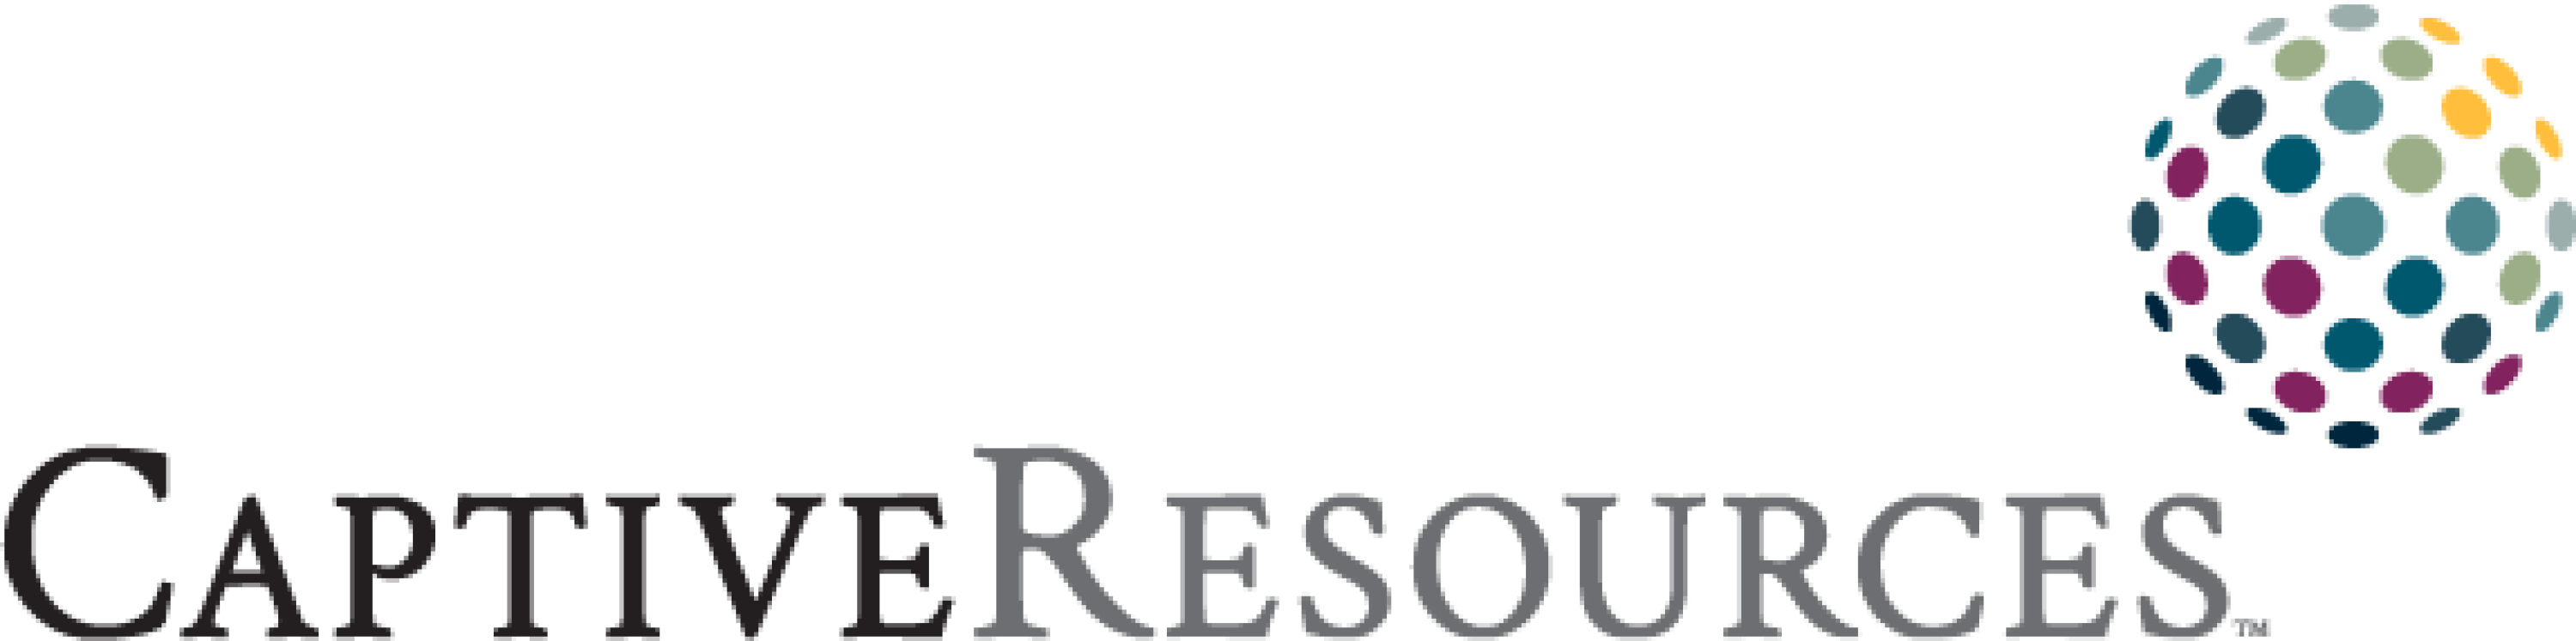 CaptiveResources logo (1) Madison Risk Group